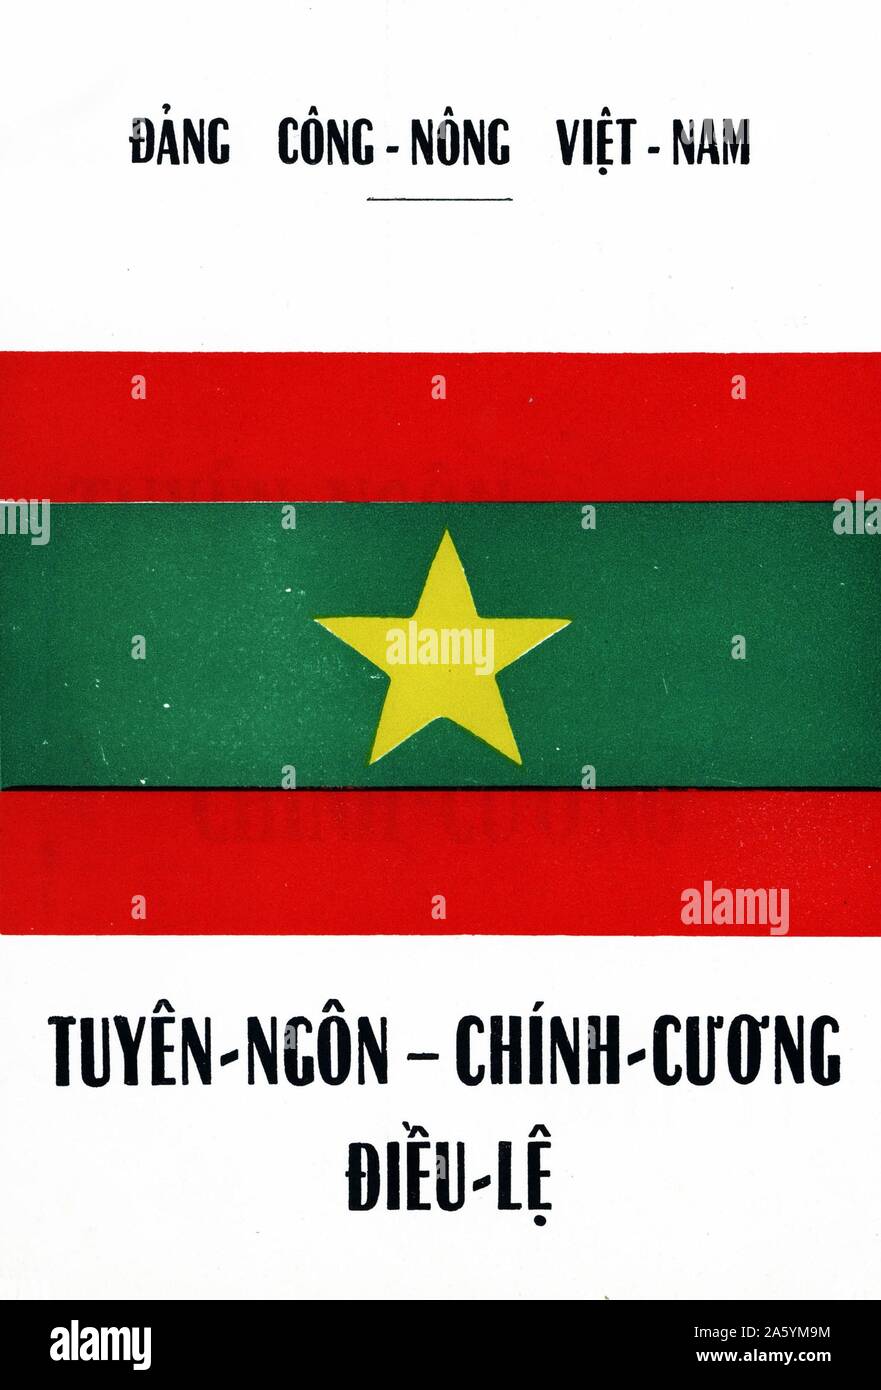 Abdeckung einer Broschüre für die Dang Cong Nong (Bauern und Arbeiter-Partei) von Vietnam während des Vietnam-Krieges ausgegeben Stockfoto